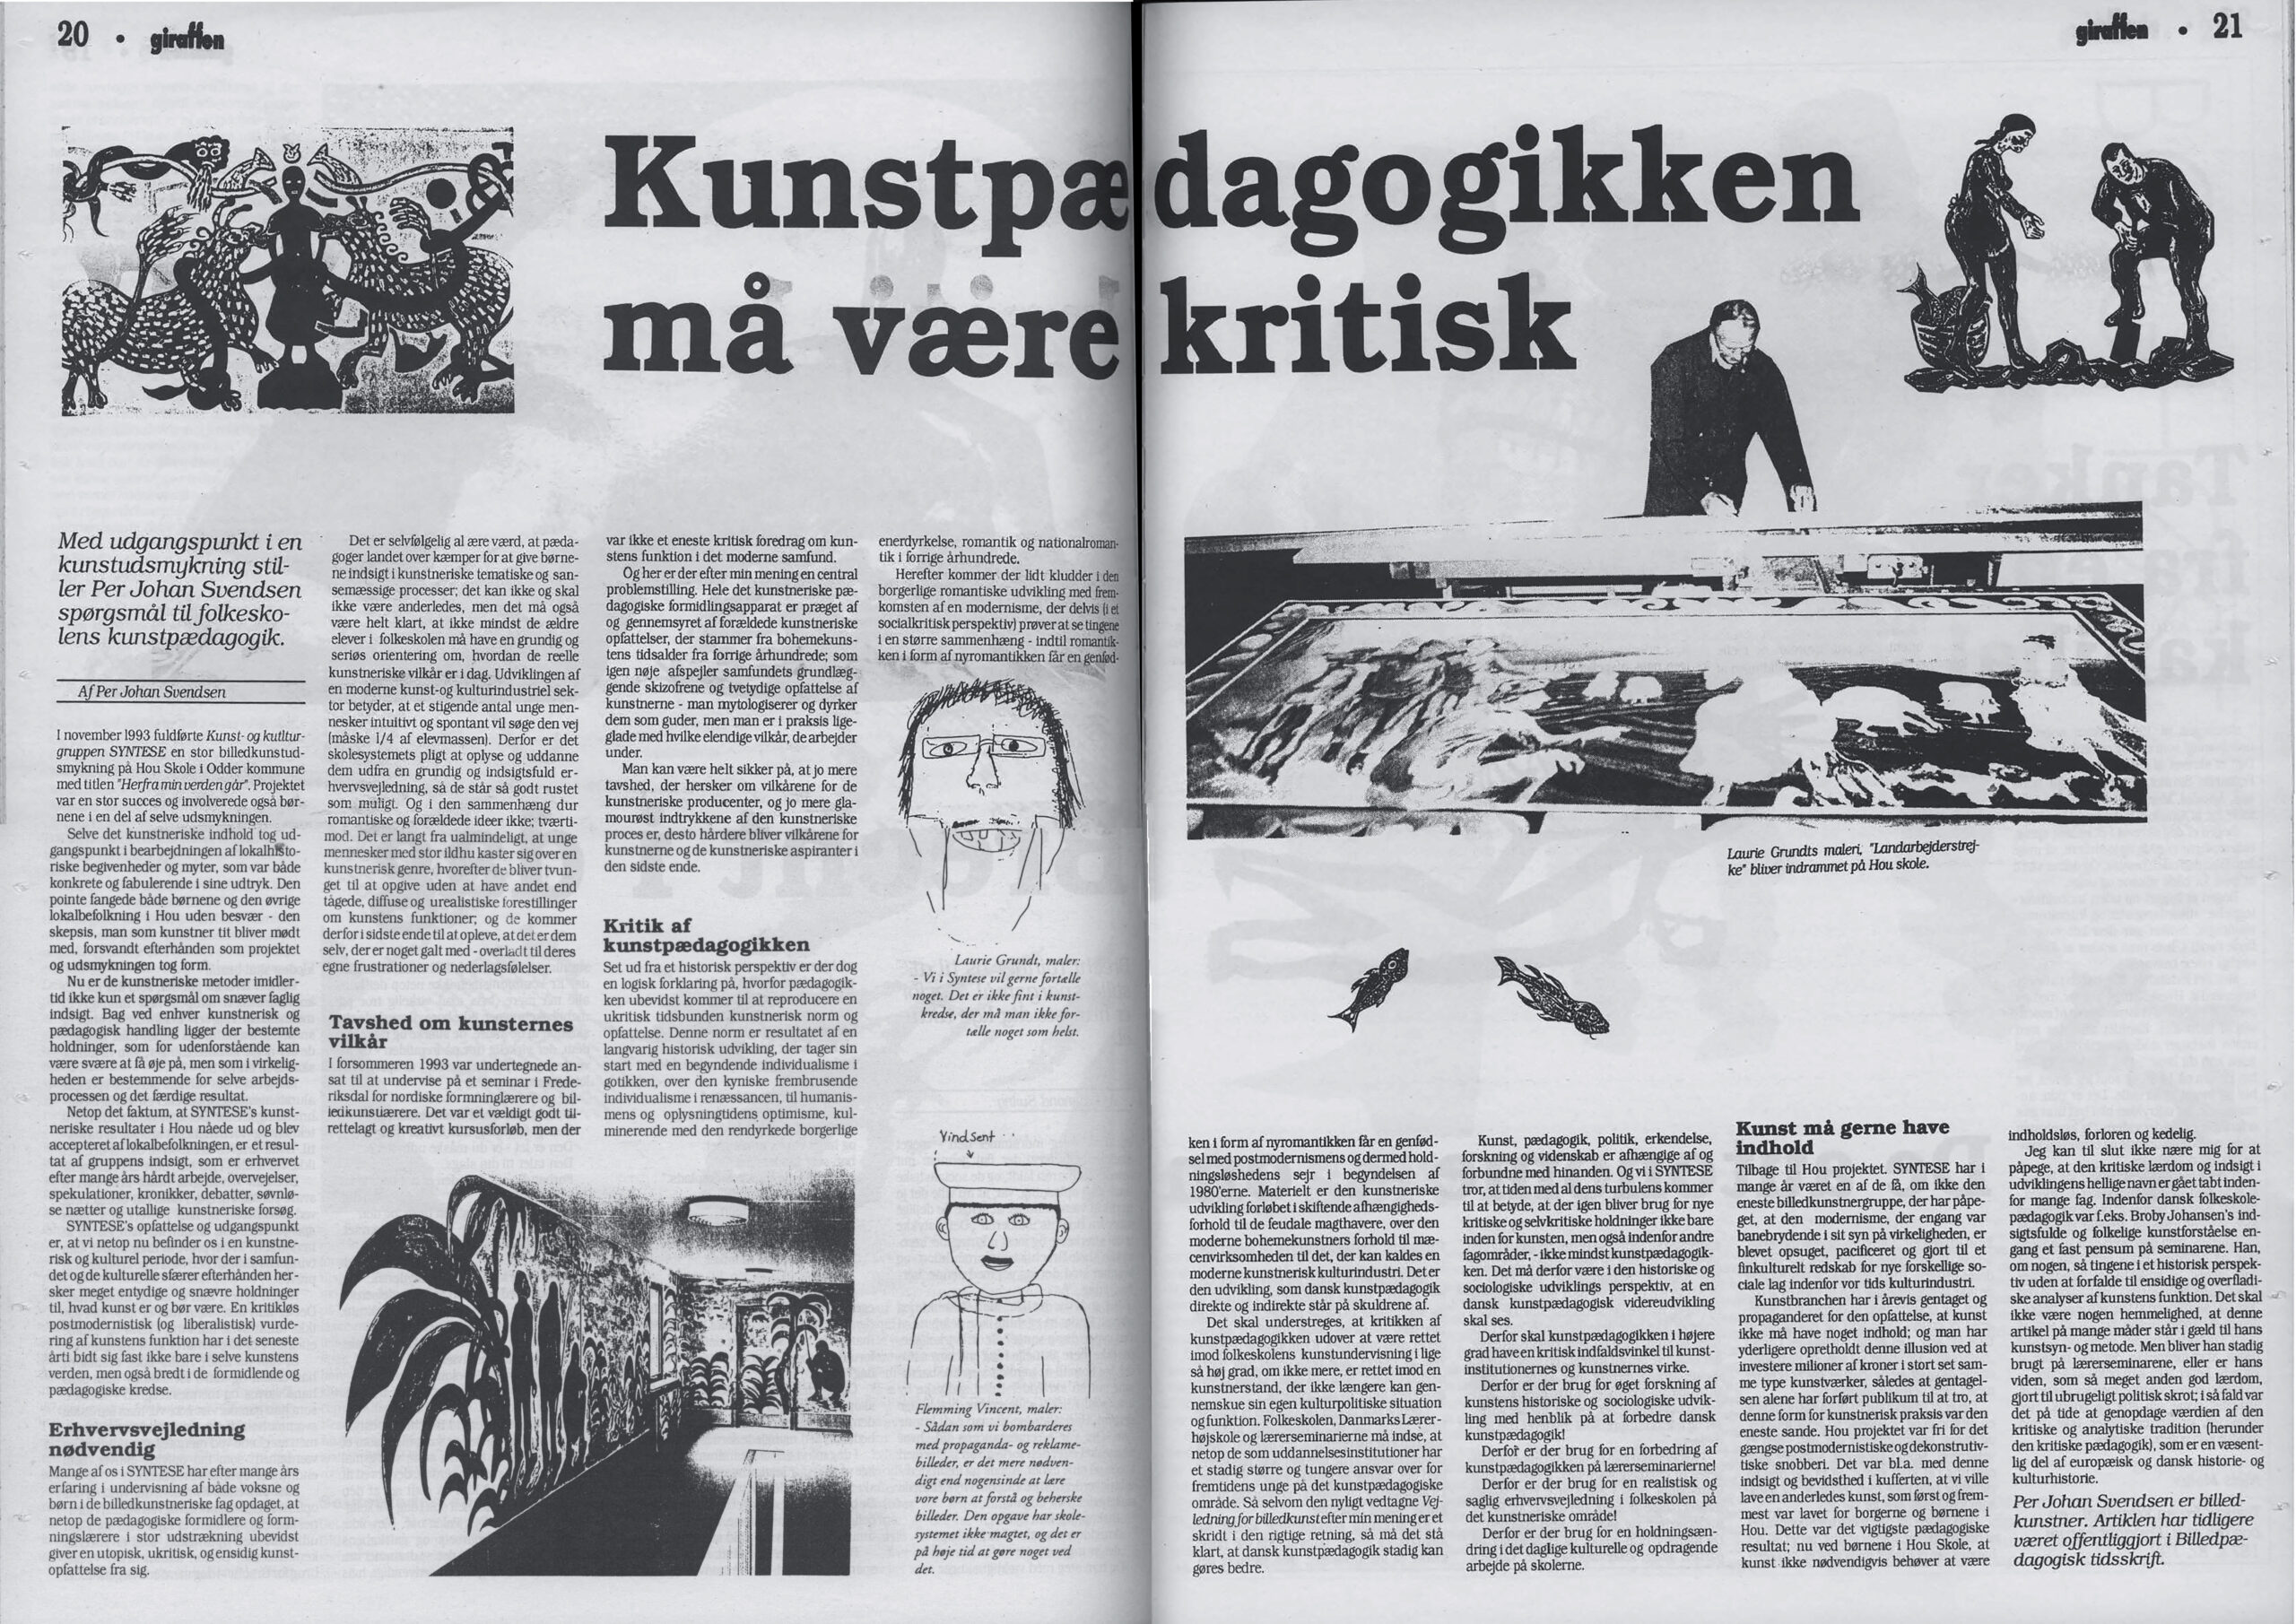 Kunstpædagogikken må være kritisk . Per Johan Svendsen. Tidsskriftet Giraffen. Dateret 1994.